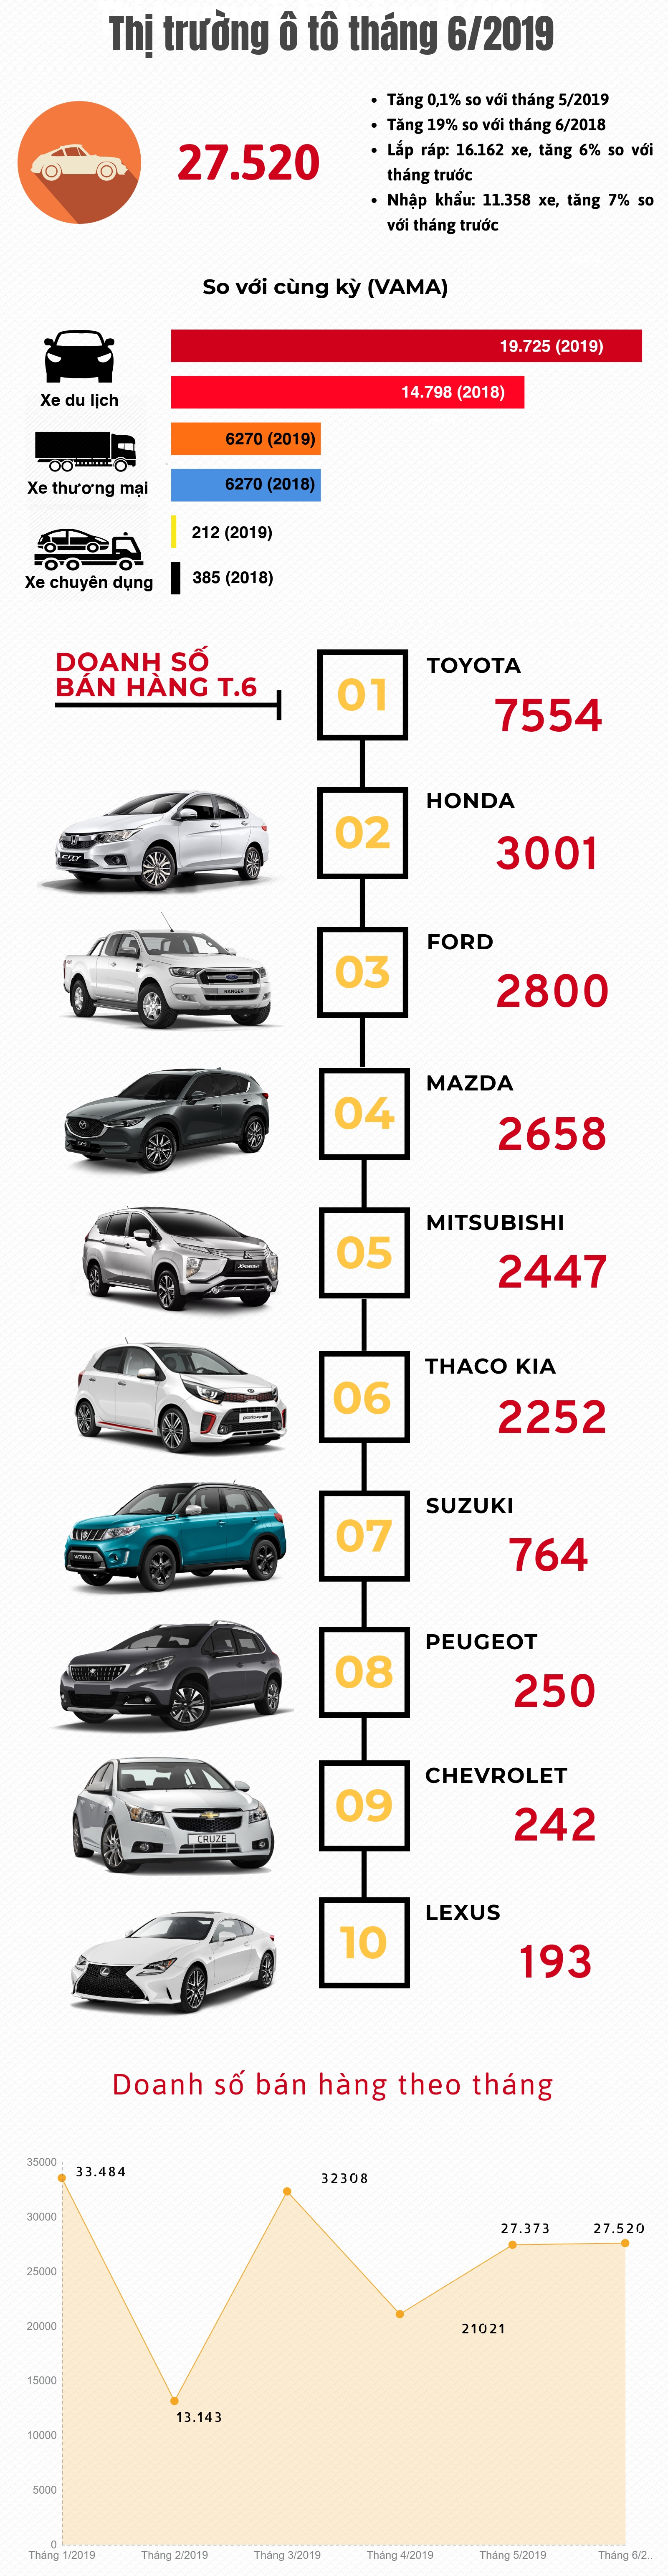 [Infographic] Thị trường ô tô tháng 6/2019: Doanh số cao nhất quý II